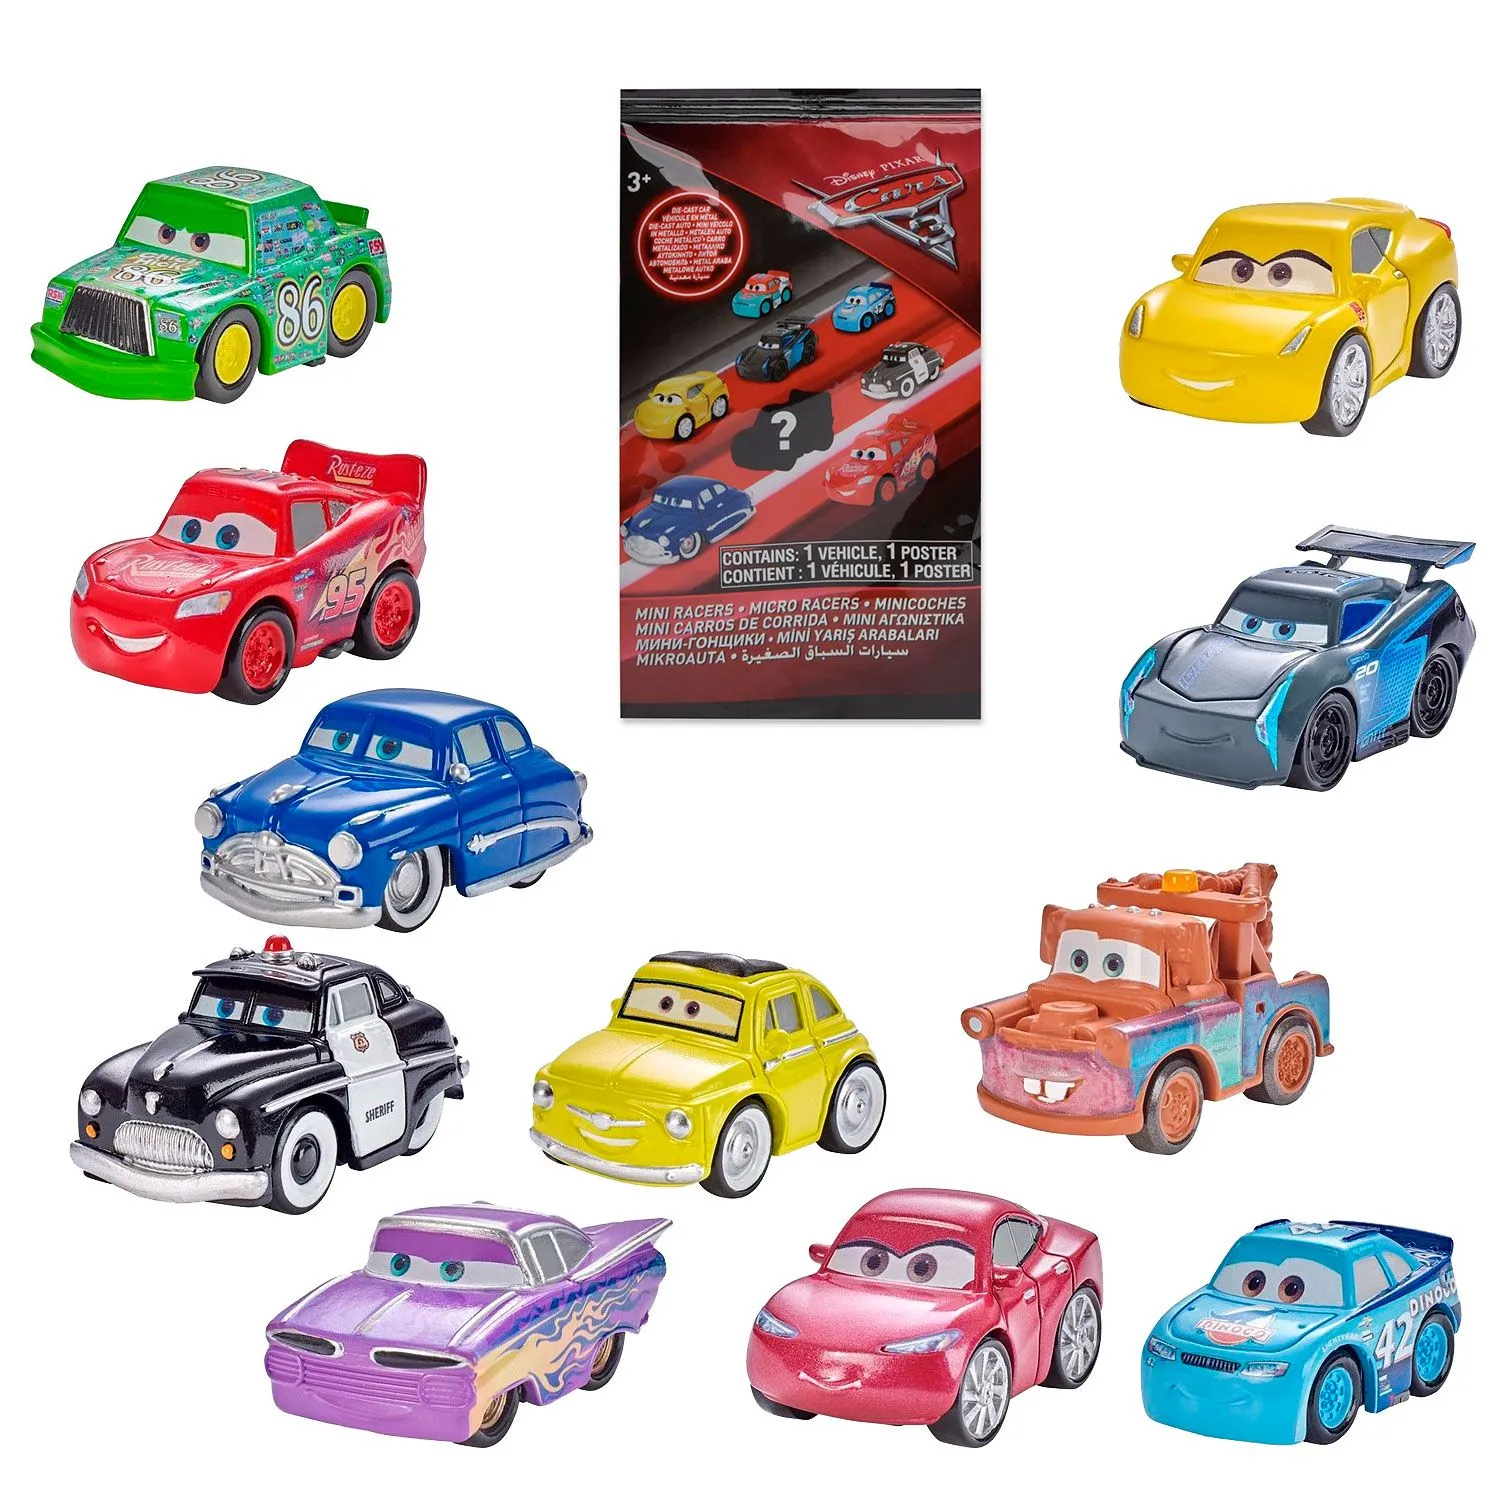 Джет Робинсон Тачки 3. Mattel cars fbg74 мини-машинки. Тачки 3 мини машинки. Тачки 3 игрушки.